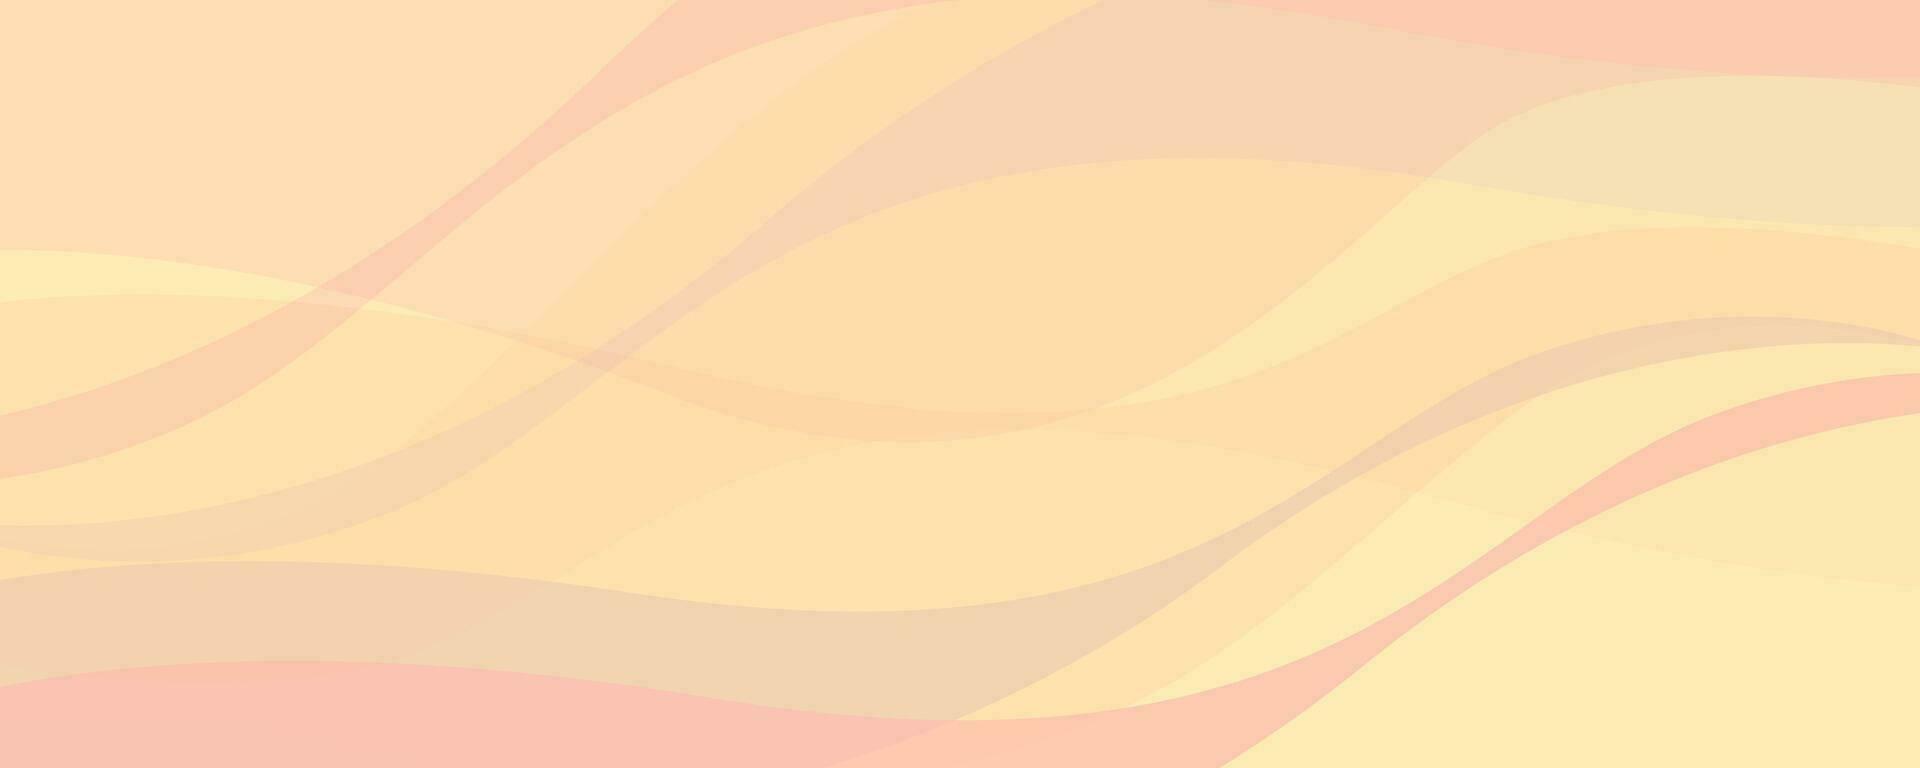 abstract achtergrond met golvend lijnen in pastel kleuren. vector illustratie.